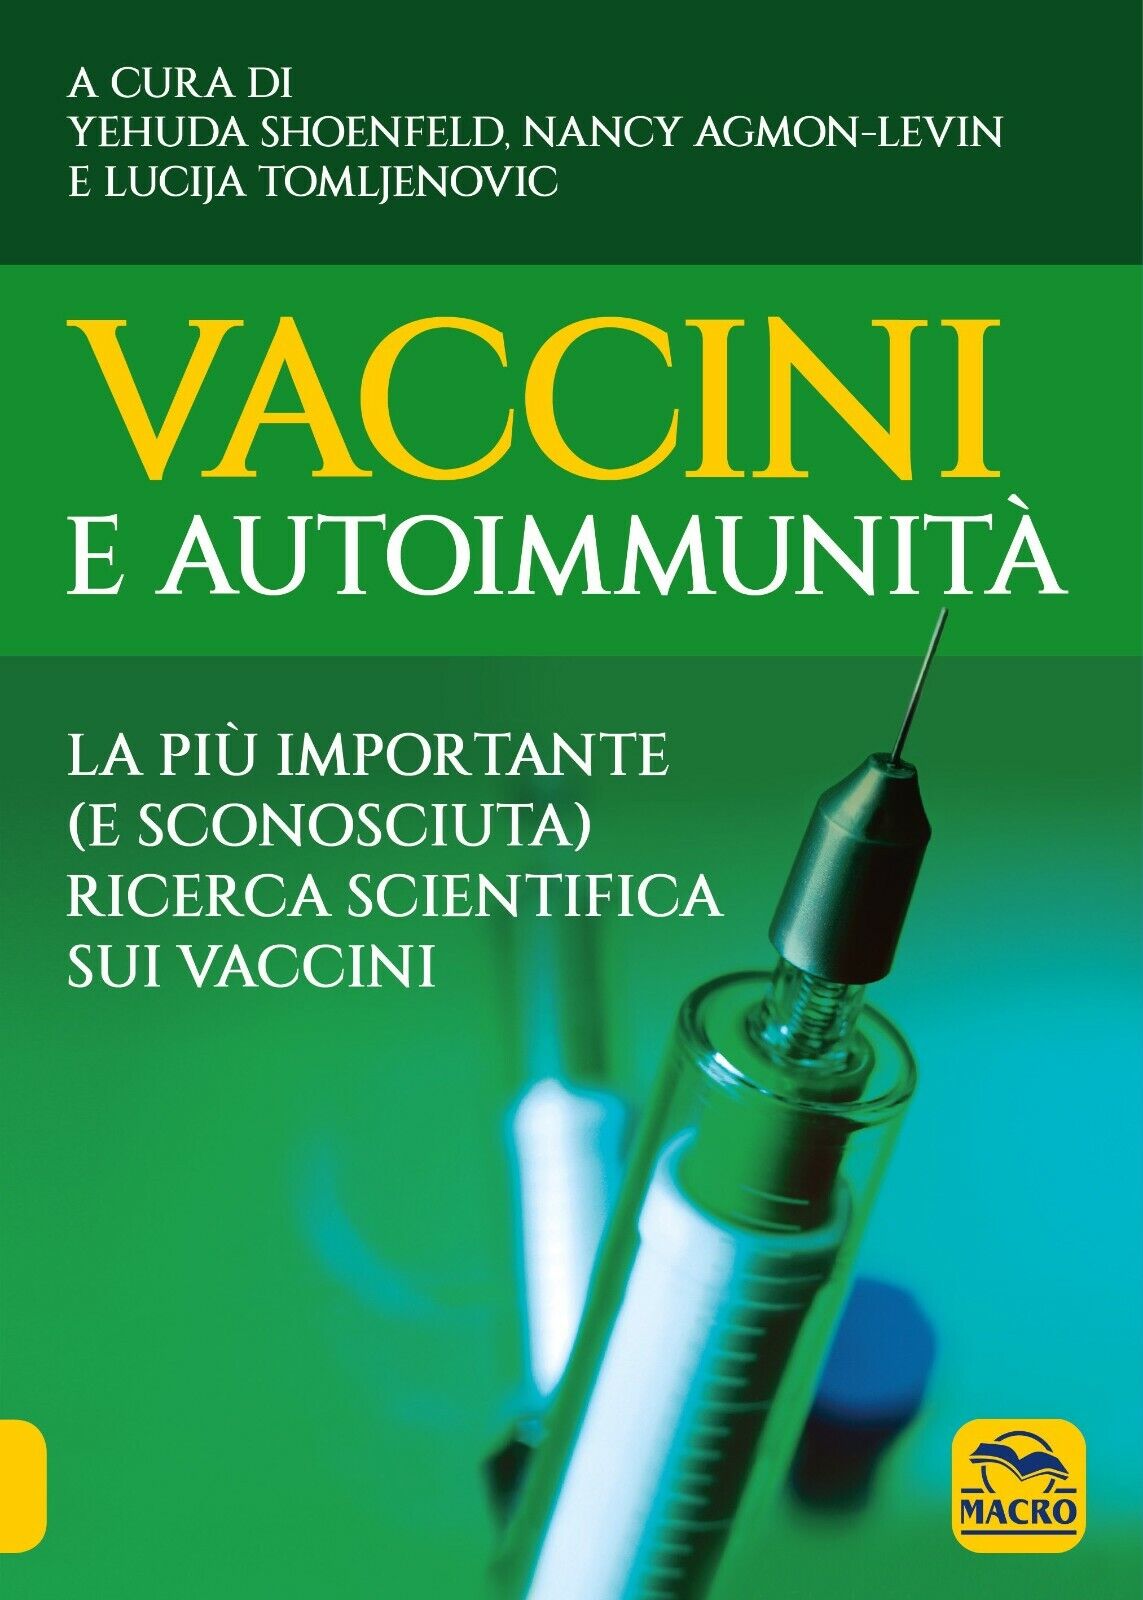 Vaccini e autoimmunit? di Y. Shoenfeld, N. Agmon-levin, L. Tomljenovic,  2021,   libro usato